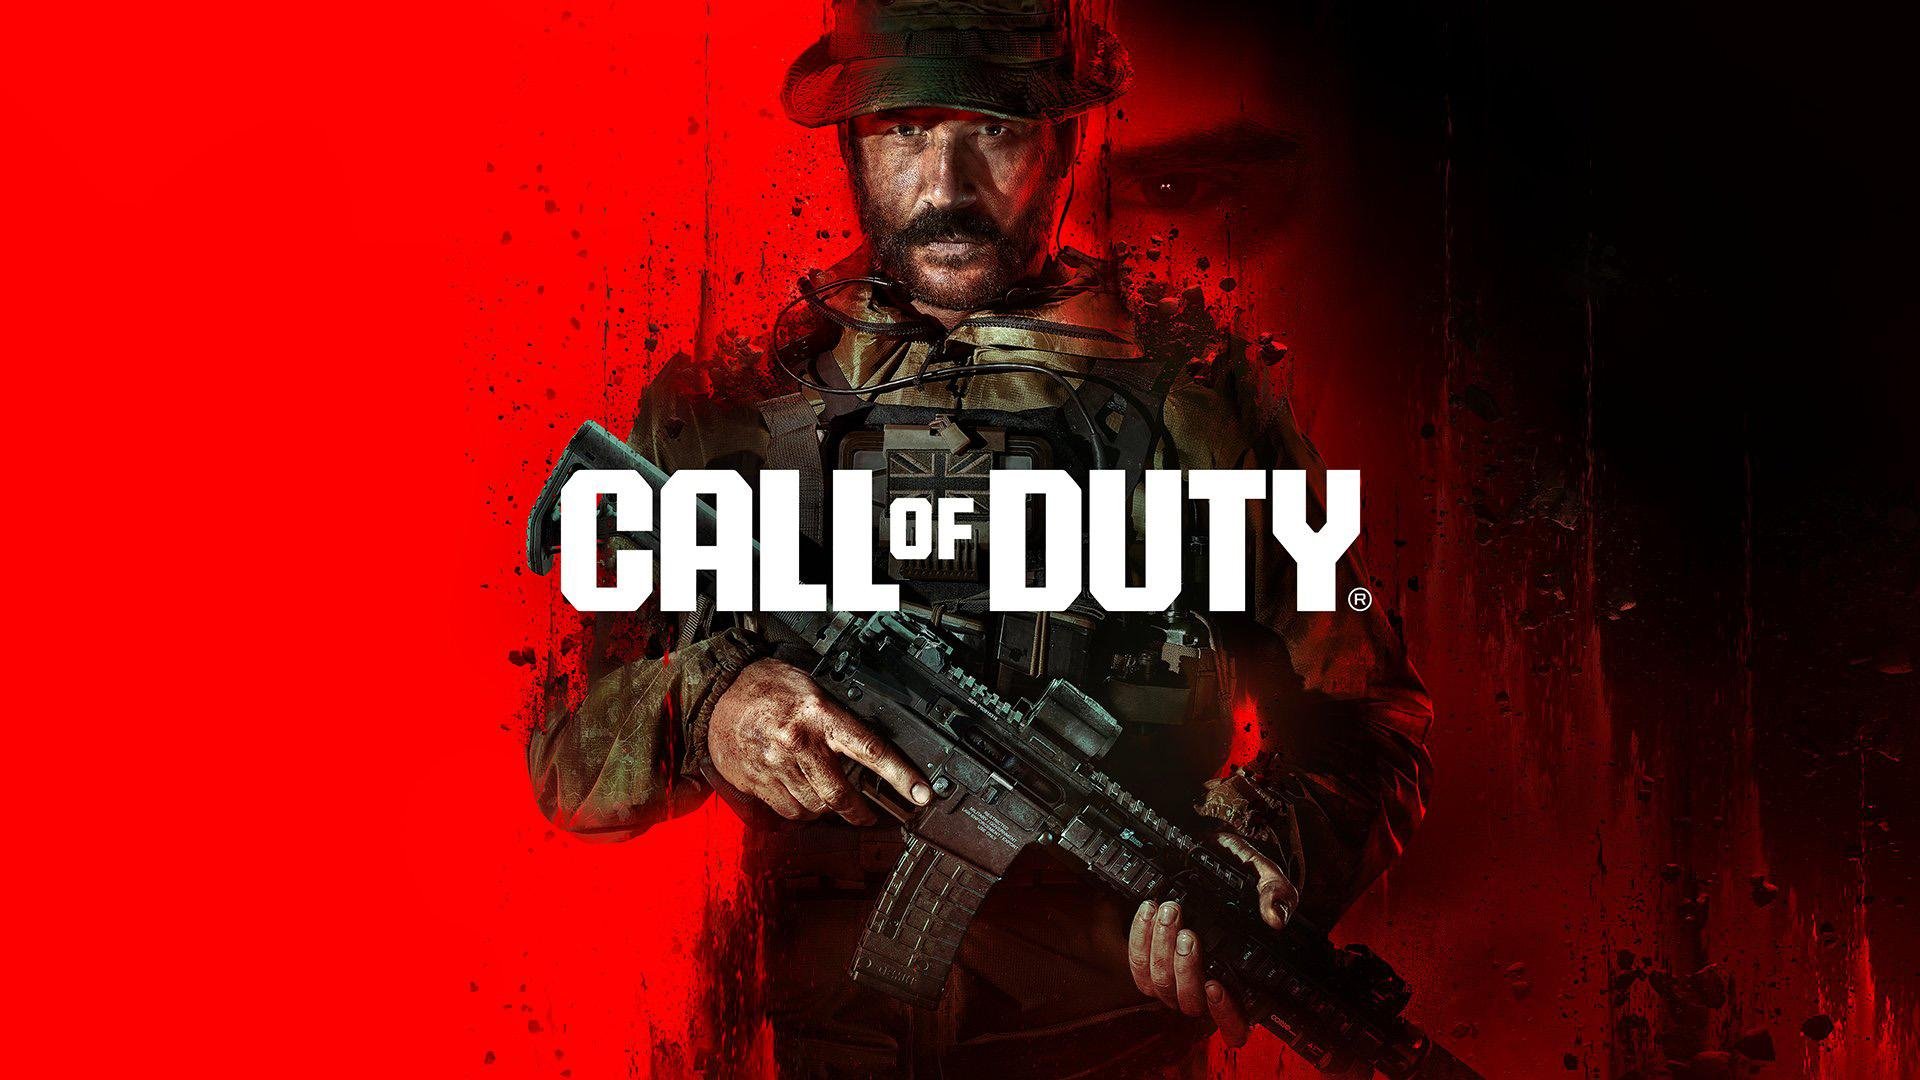 Call of Duty não chega ao Game Pass por acordo da Sony